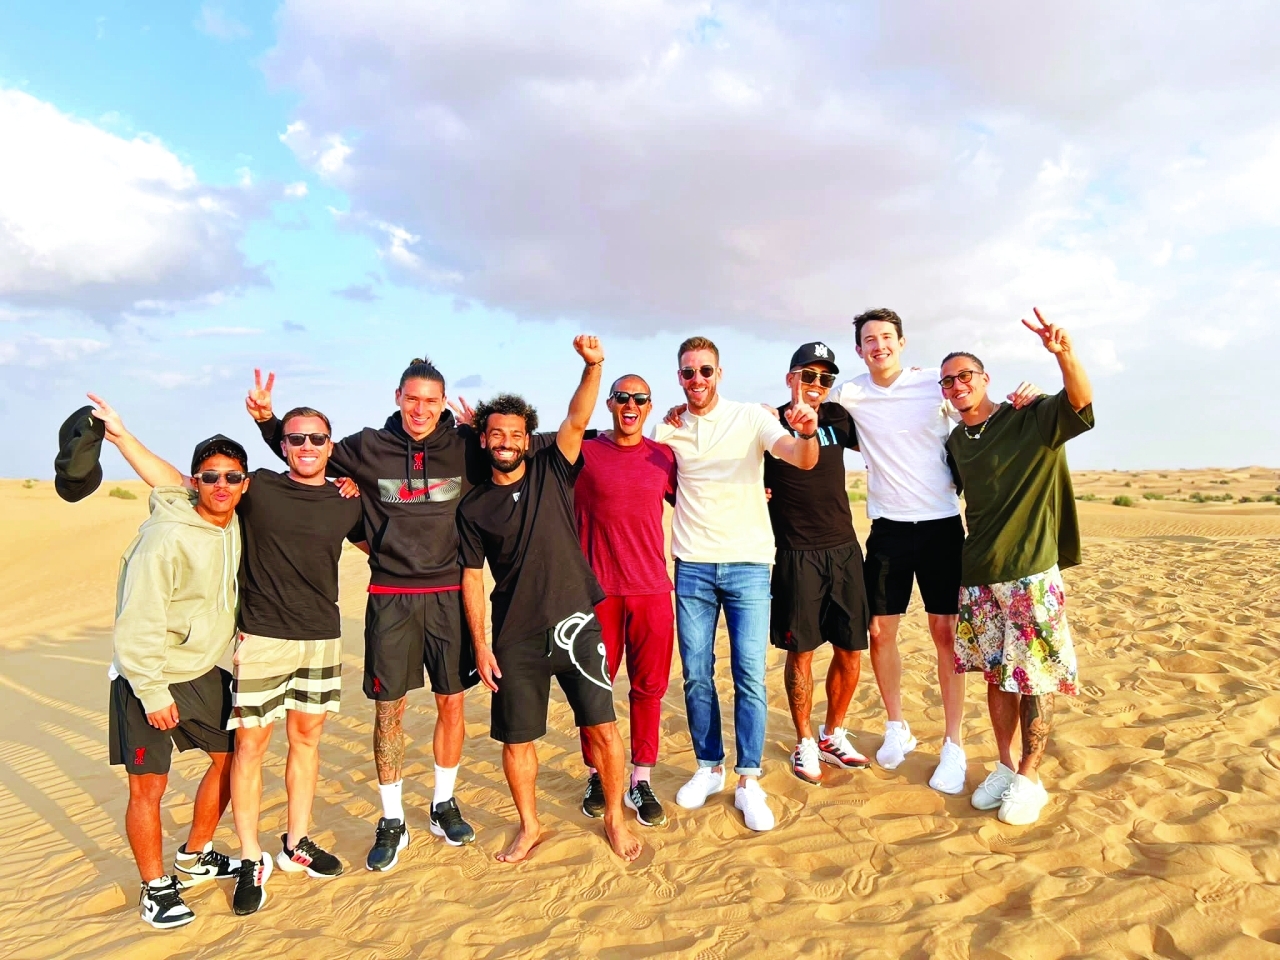 الصورة : نجوم ليفربول بقيادة صلاح يحتفلون خلال رحلة في صحراء دبي | البيان